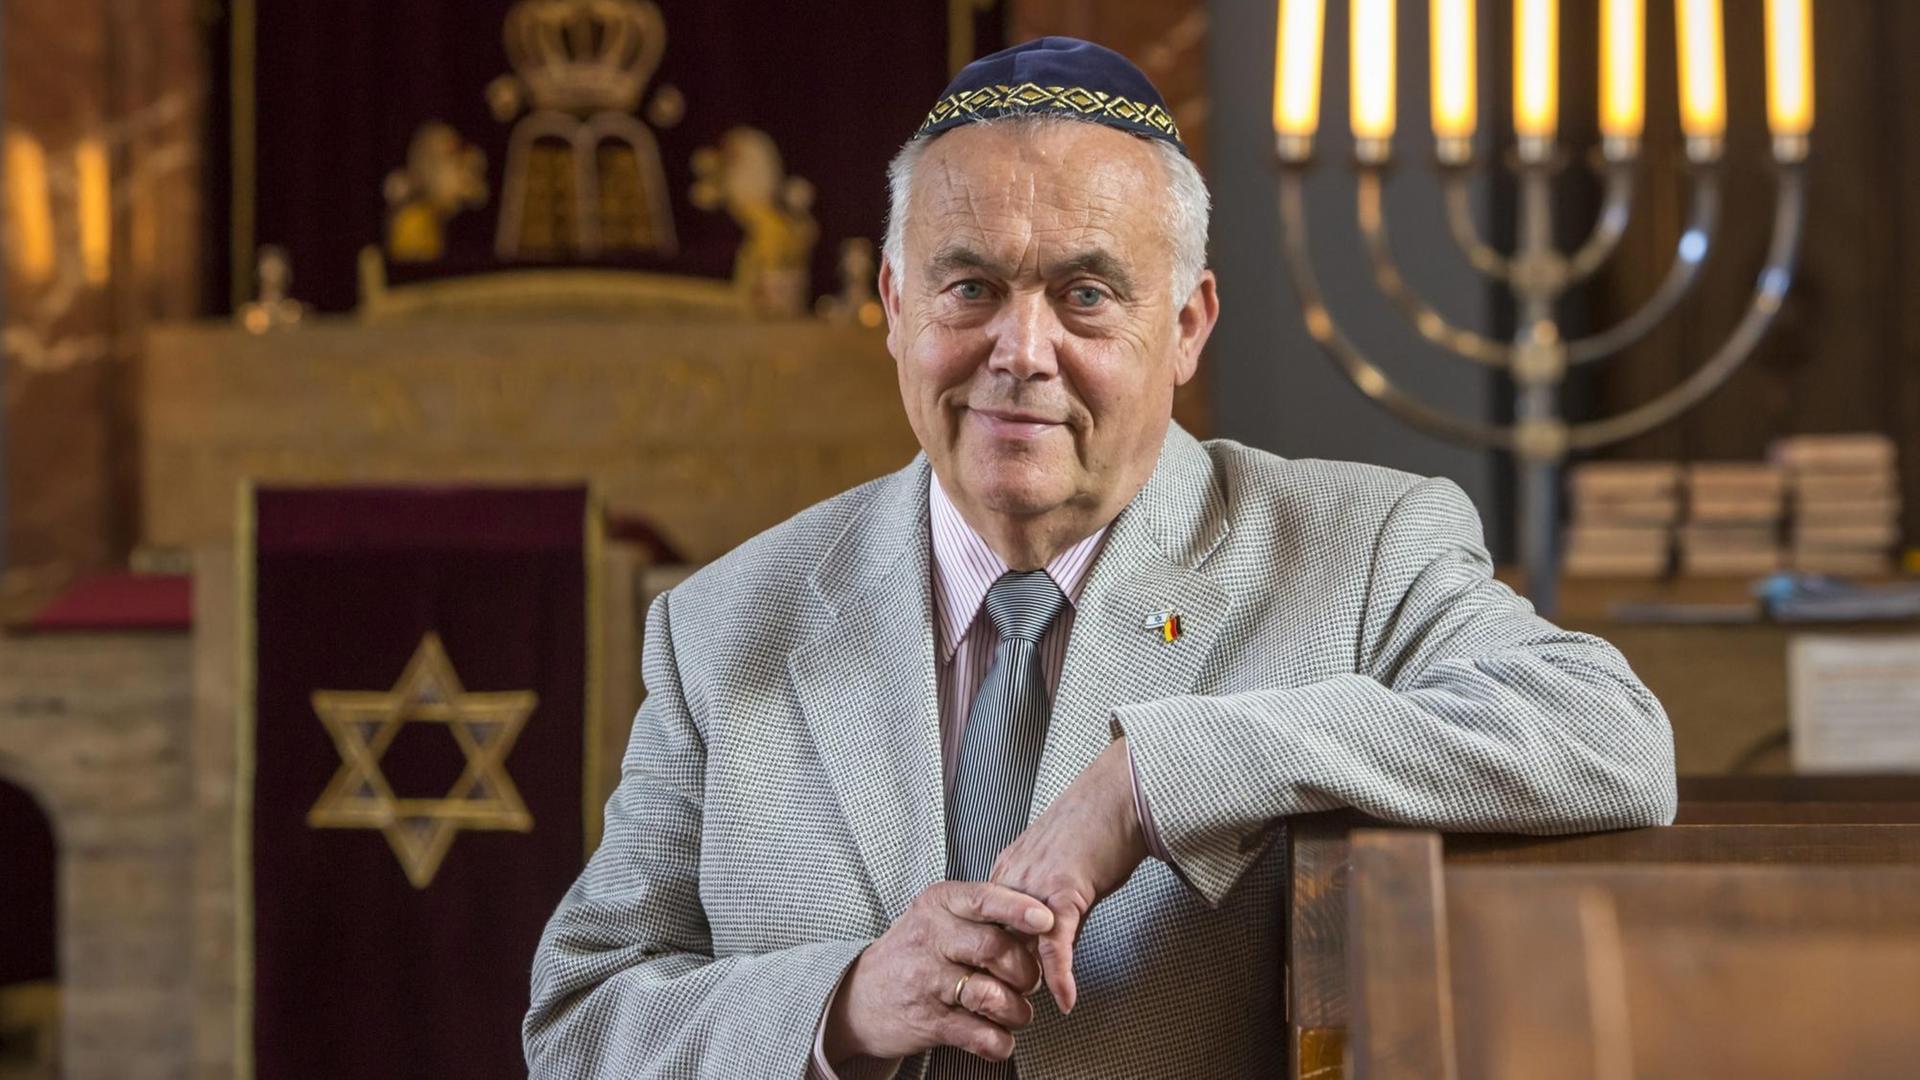 Reinhard Schramm, Vorsitzender der Jüdischen Landesgemeinde Thüringen, in einer Synagoge, in die Kamera lächelnd, den Arm auf eine Bank gestützt